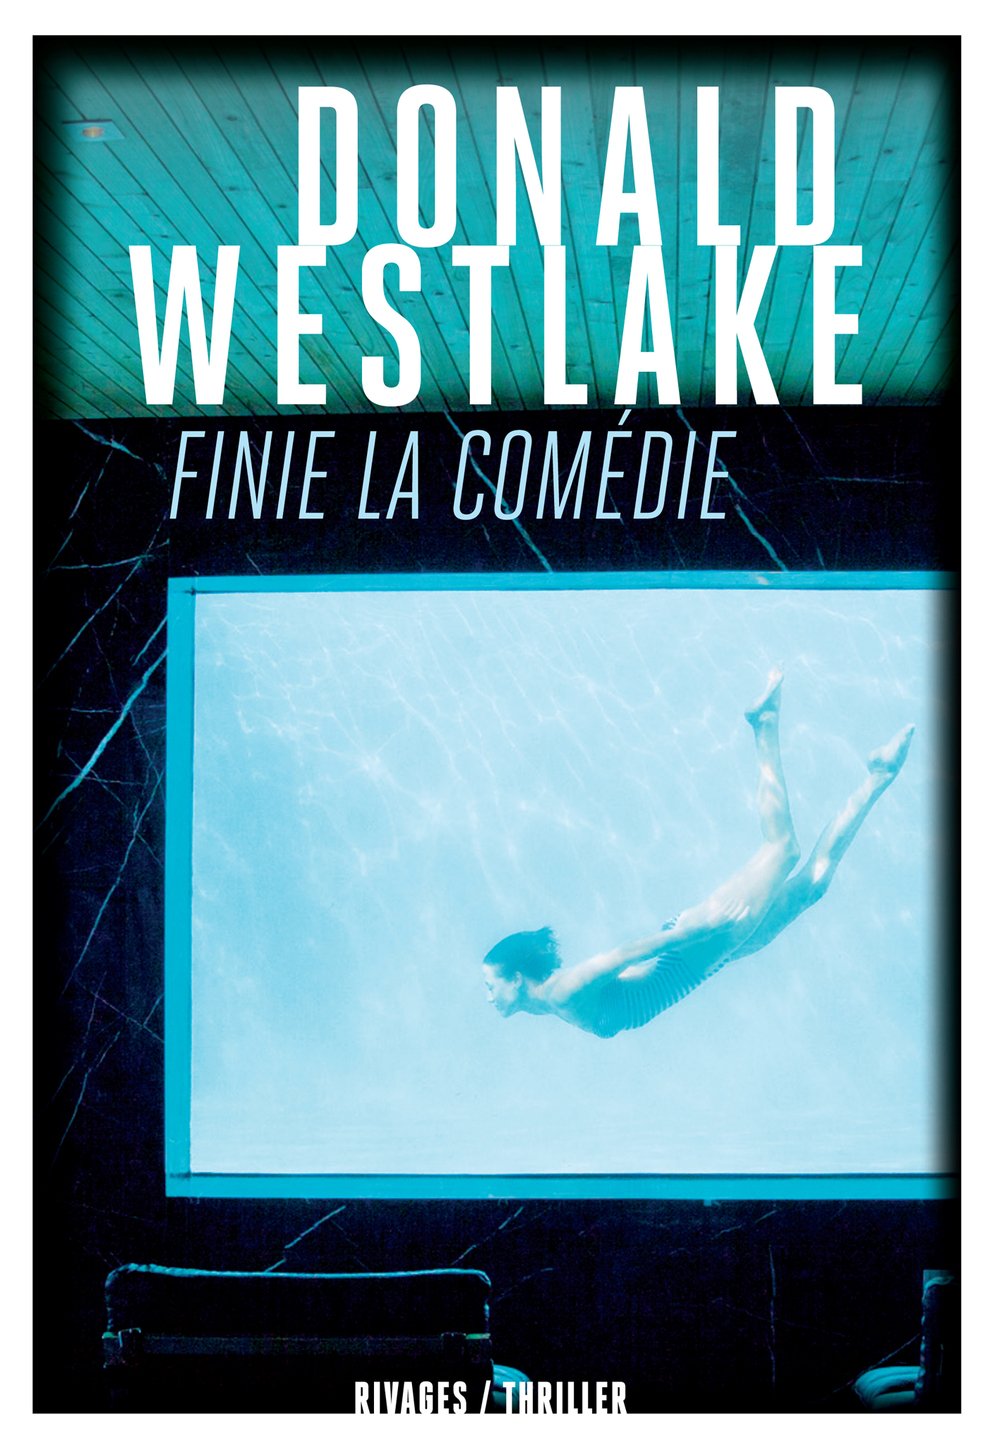 Finie la comédie - Donald Westlake